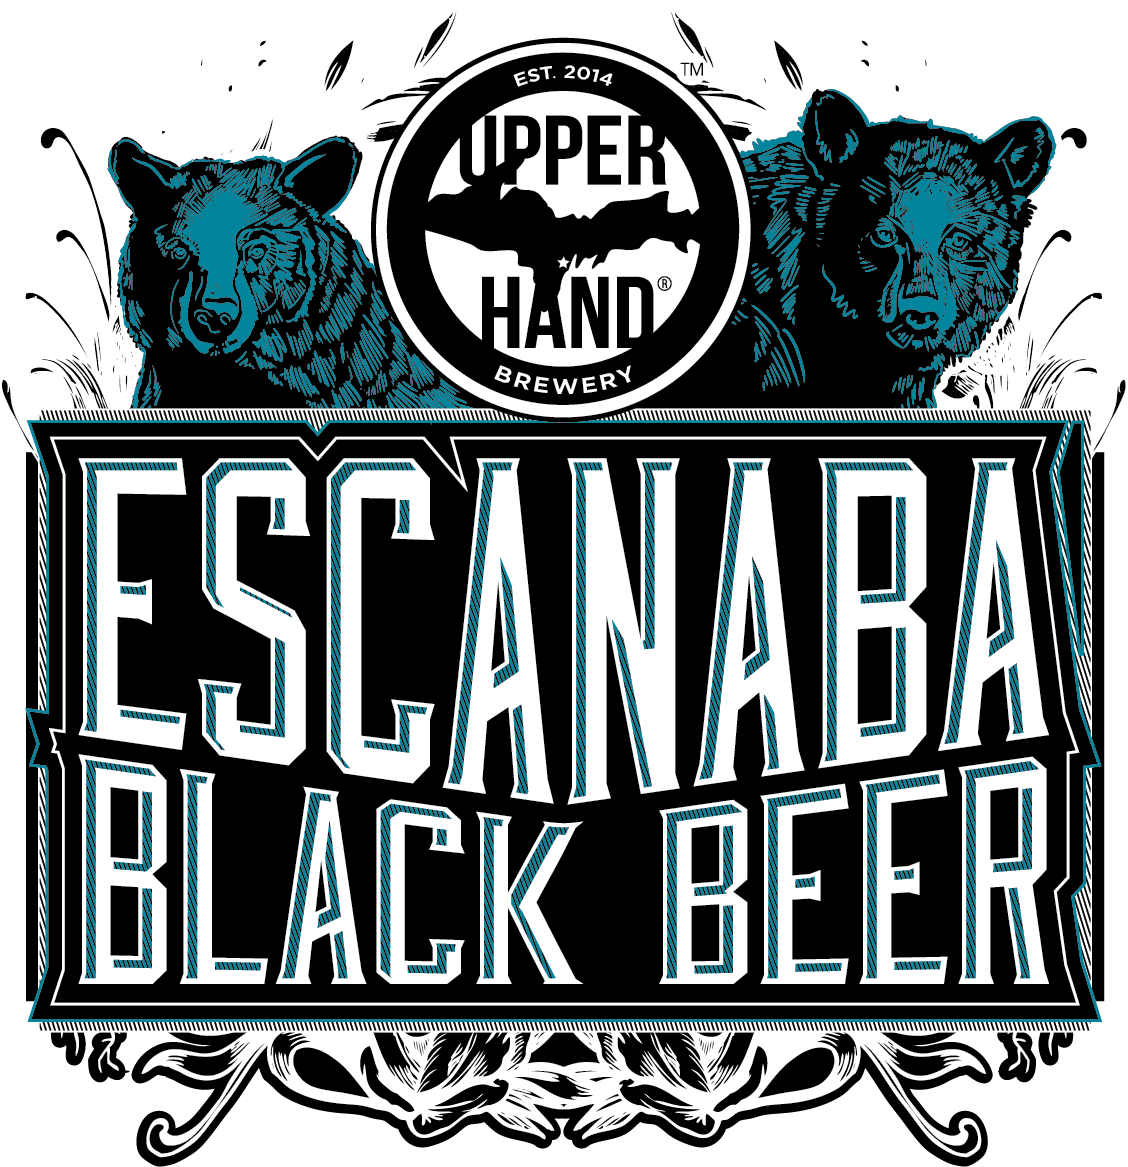 Escanaba Black Beer on NITRO